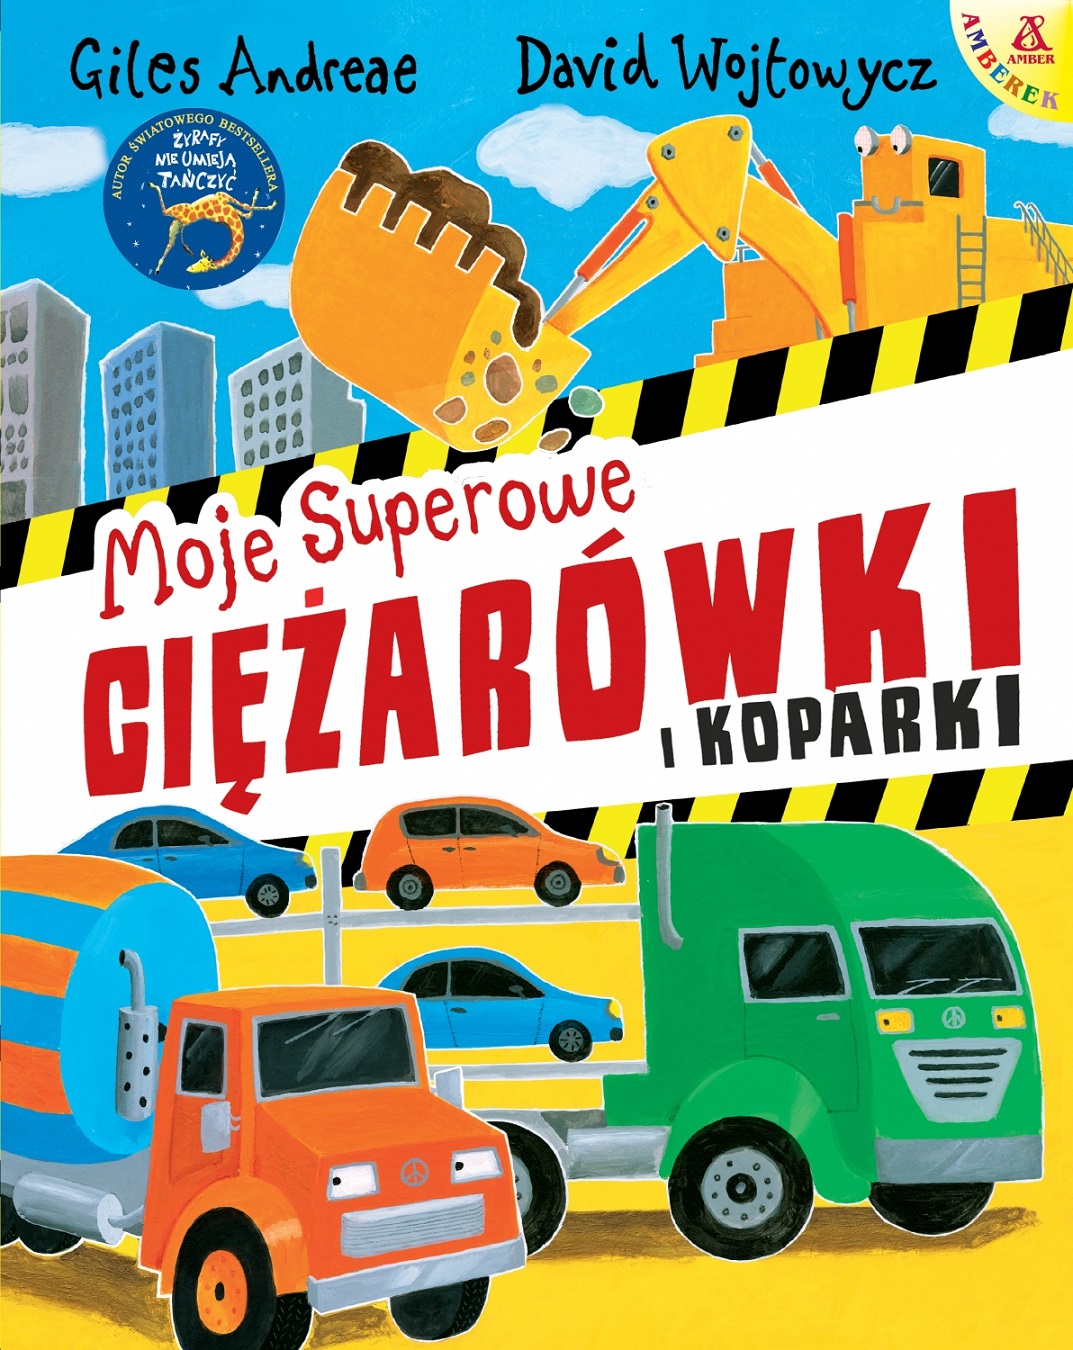 Moje superowe ciężarówki i koparki - książka dla dzieci